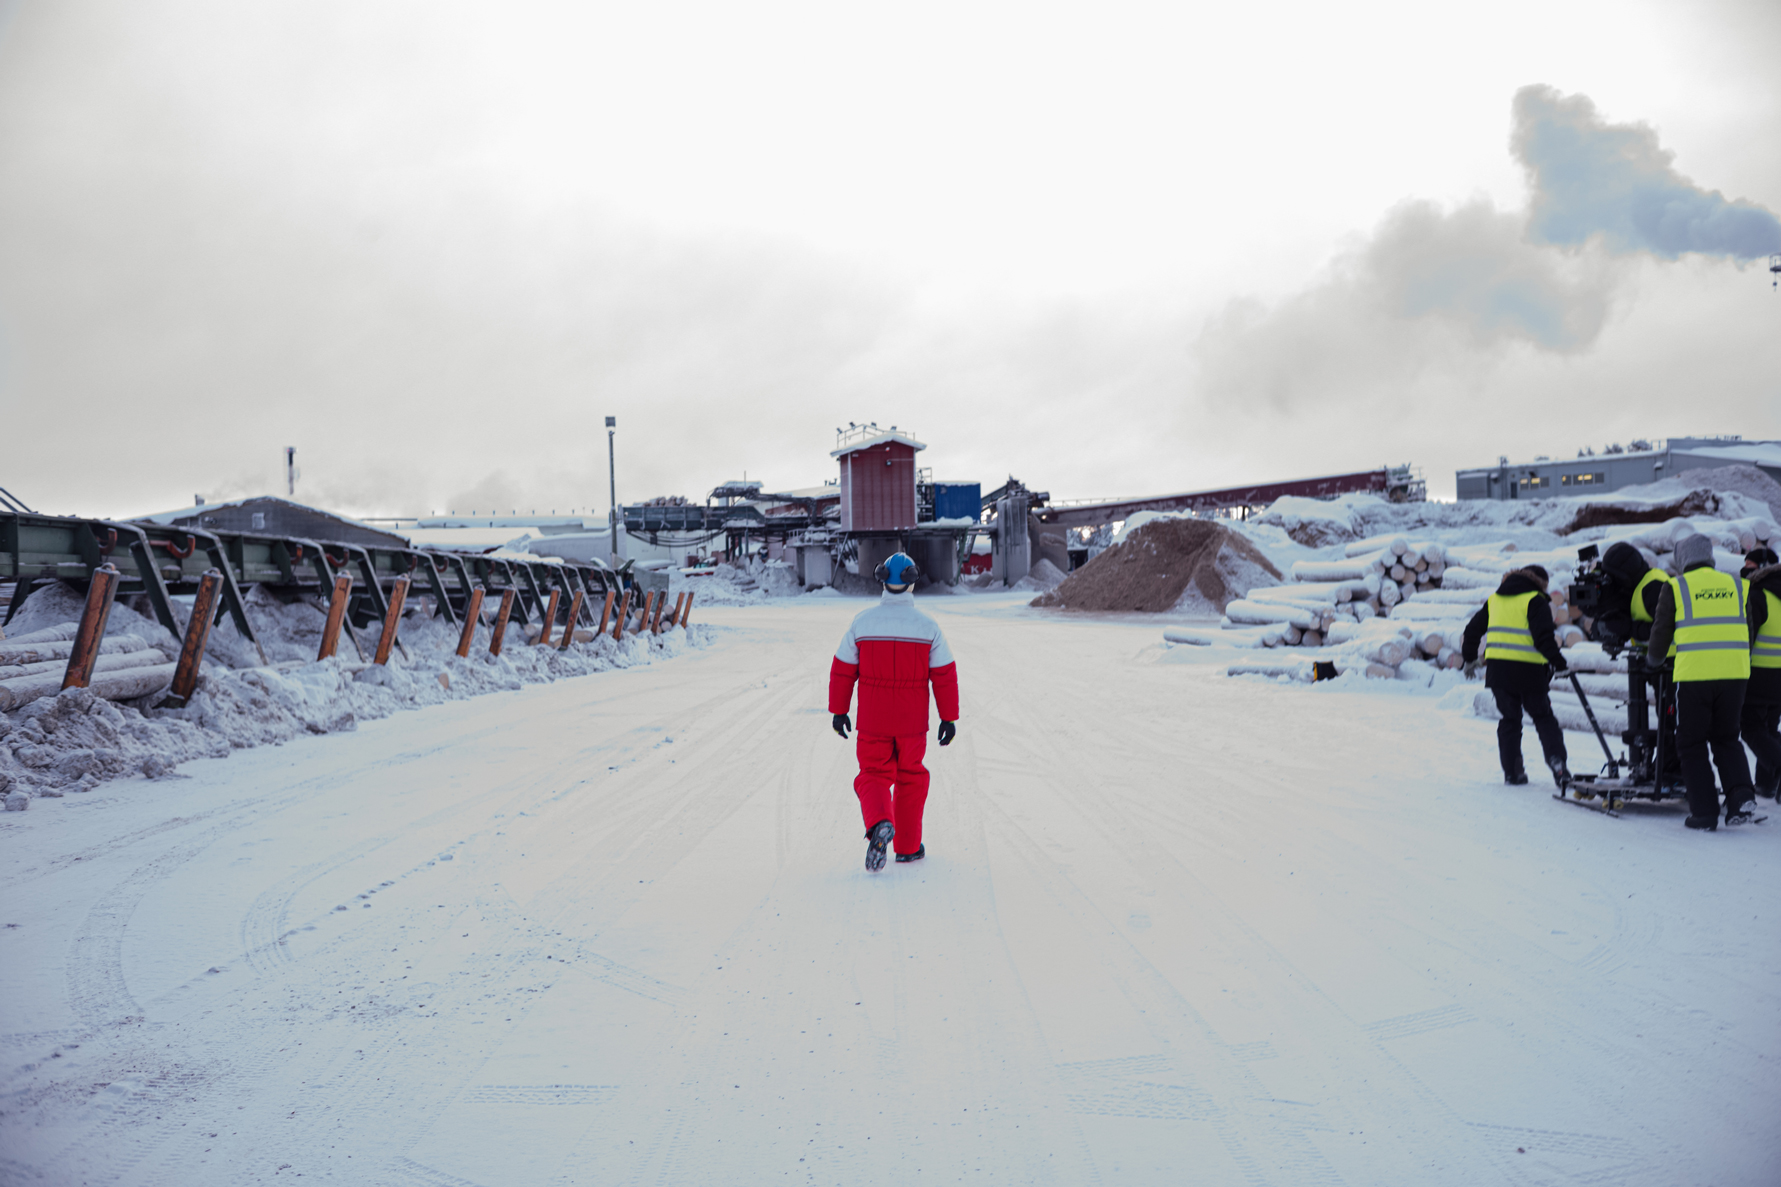 Metsurin tarina -elokuvan päähenkilö, Pepe (Jarkko Lahti), kävelemässä tehdasalueella. Kuva: Tero Ahonen © Elokuvayhtiö Aamu